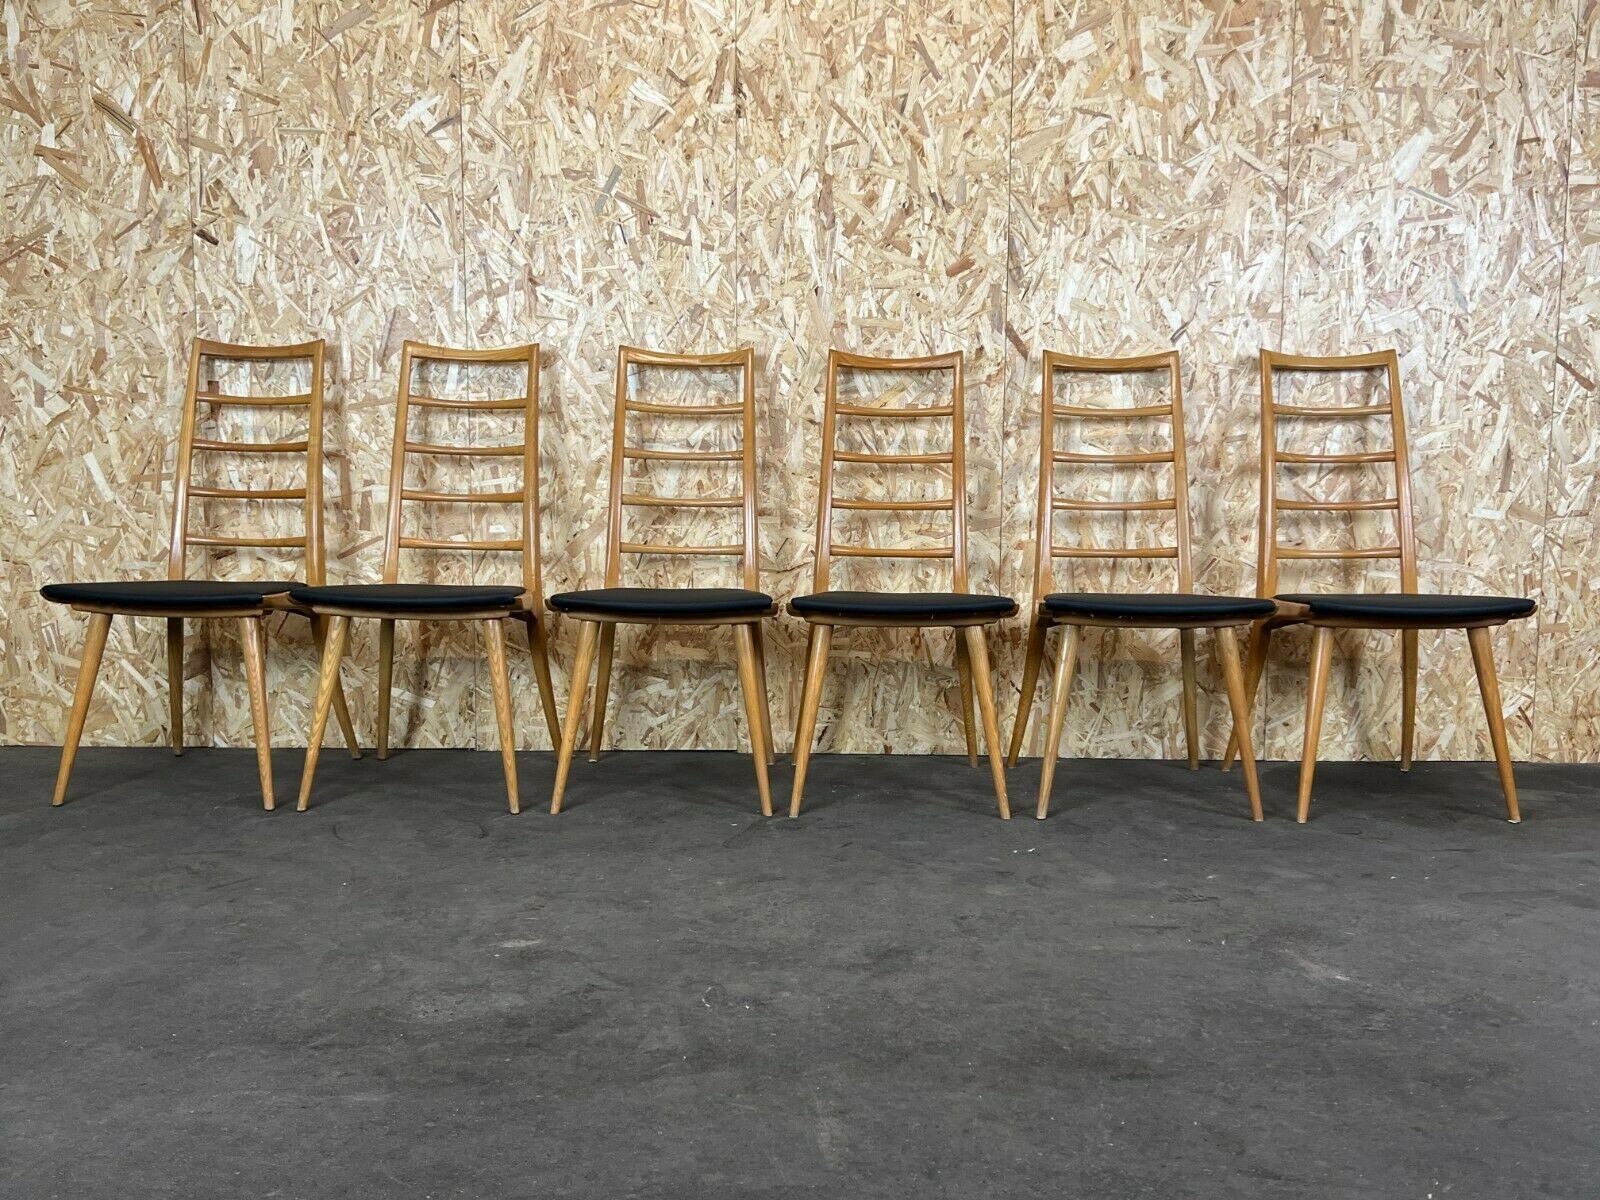 6x chaises 60s 70s chaise chaise à manger chaise à manger chaises design danois 60s

Objet : 6x chaise

Fabricant :

Condition : bon - vintage

Âge : environ 1960-1970

Dimensions :

46cm x 58cm x 96.5cm
Hauteur du siège =